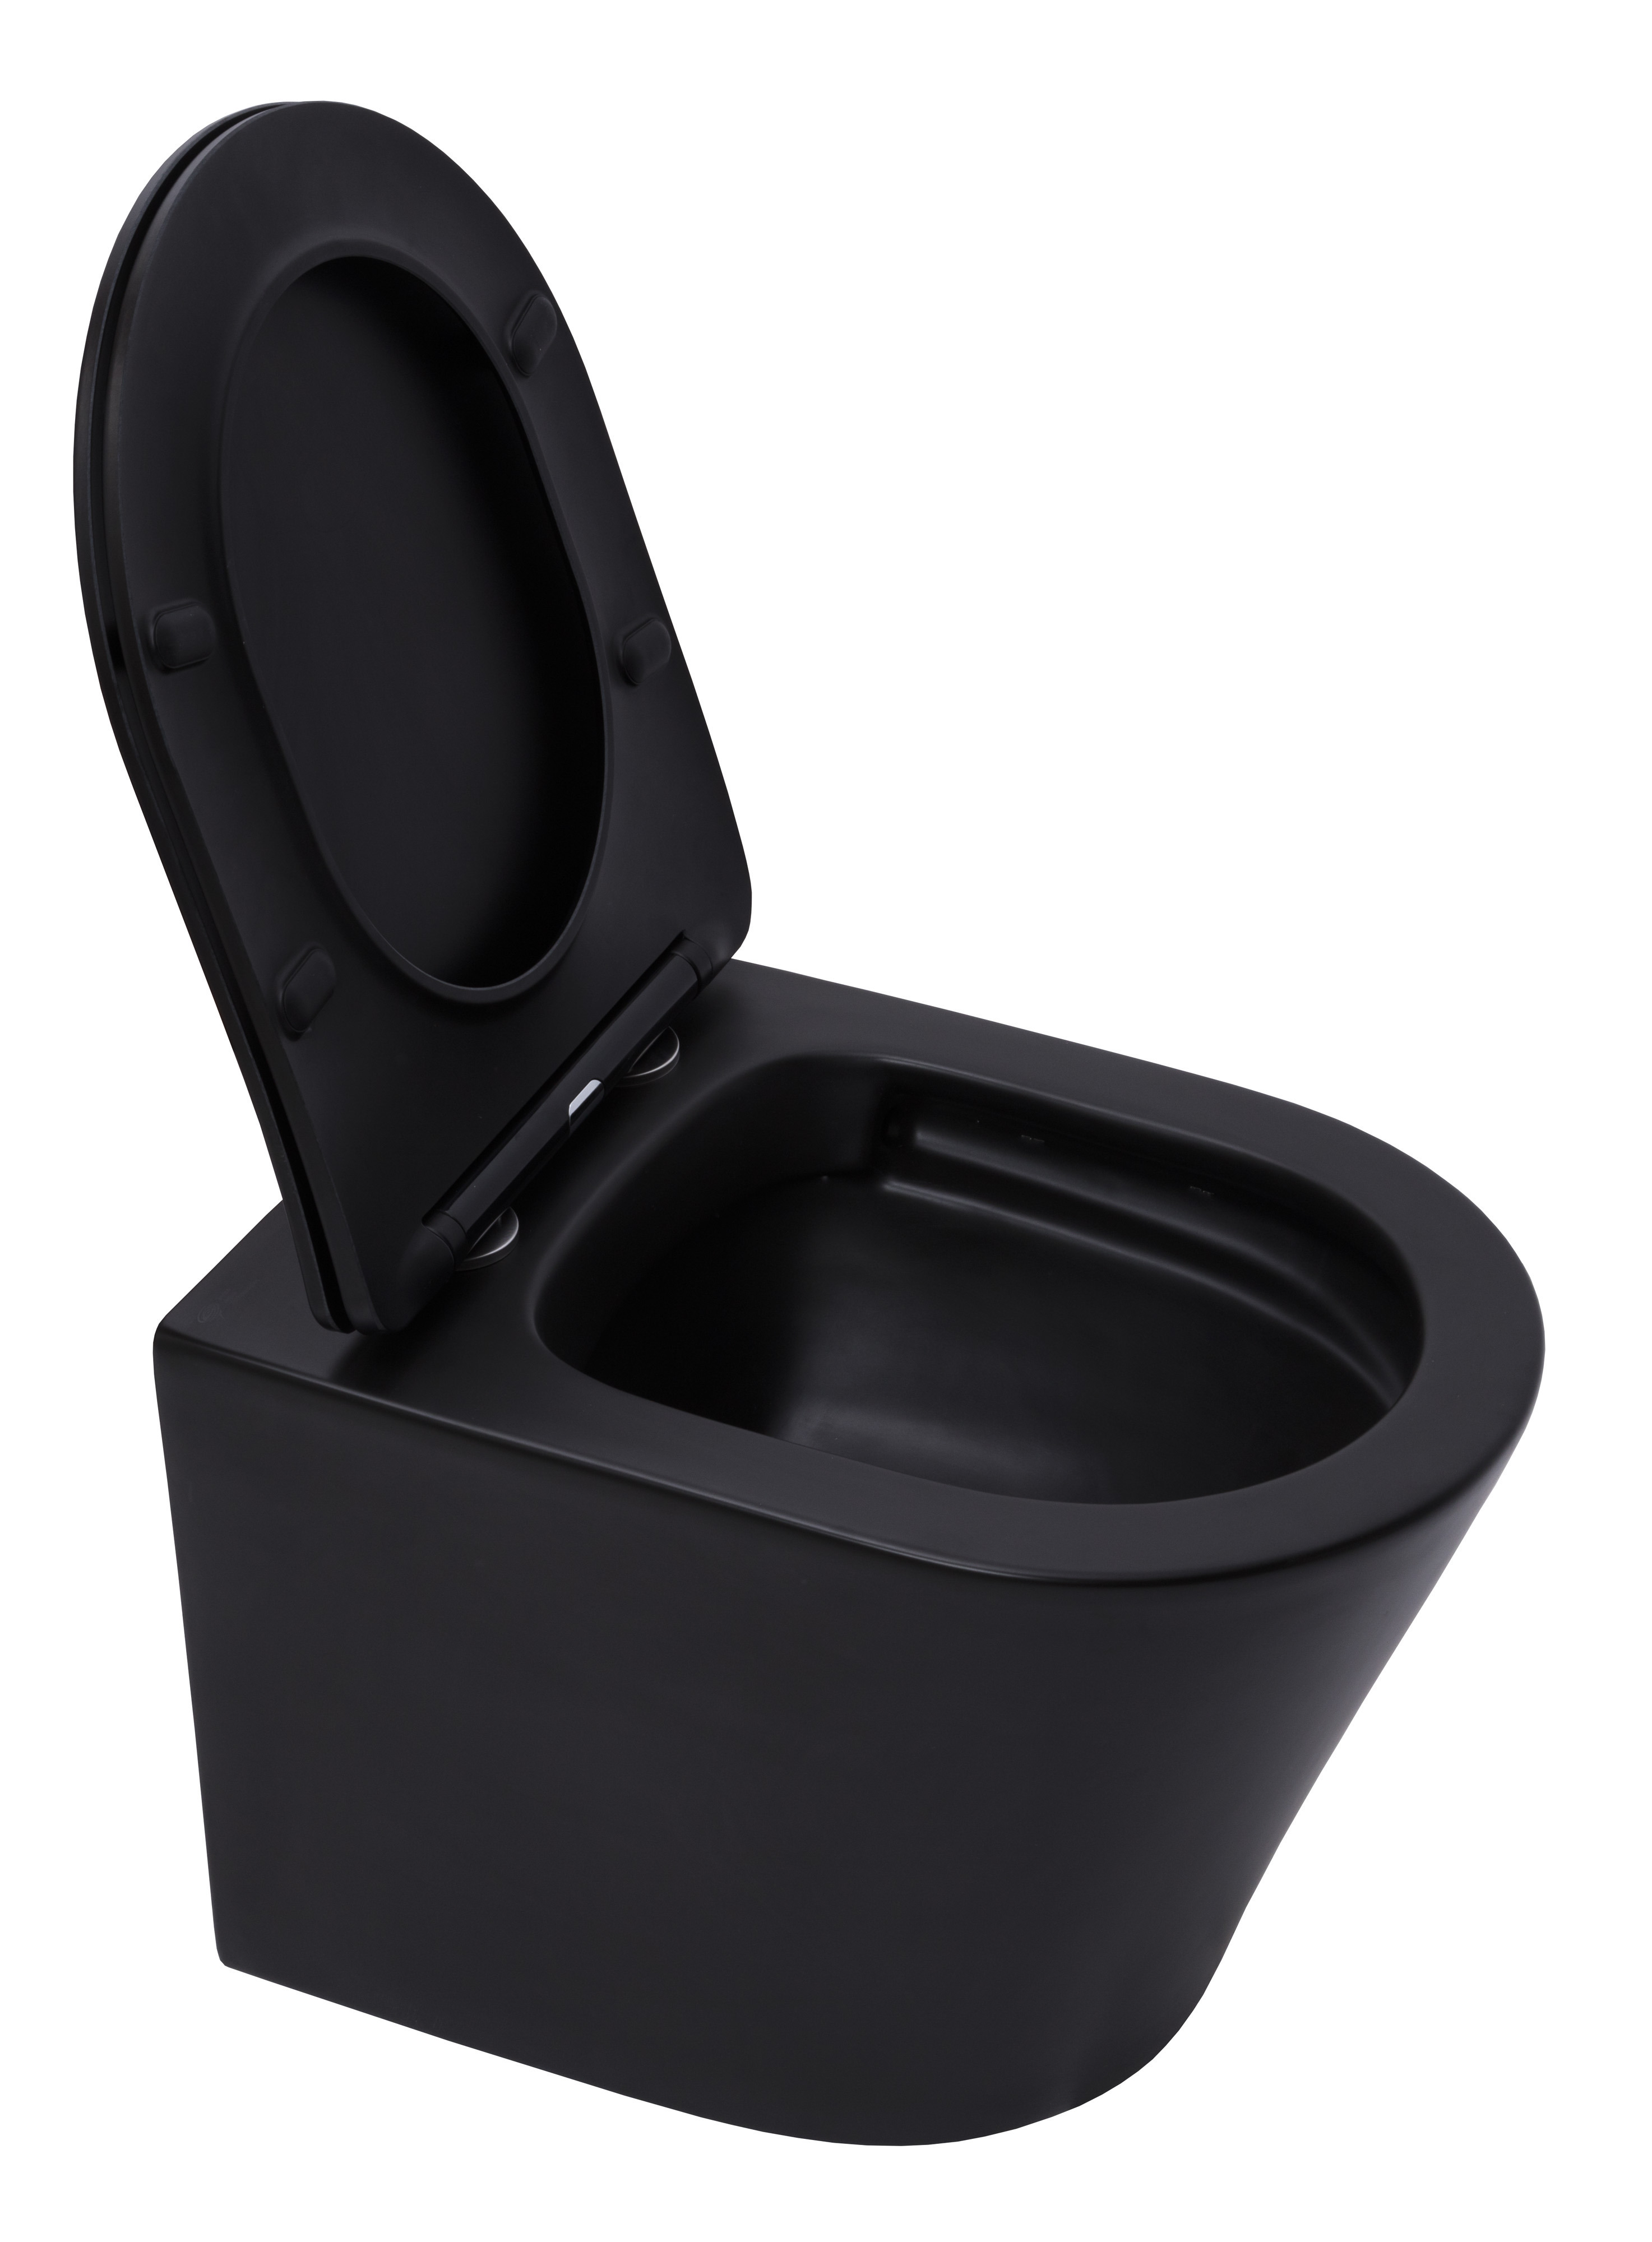 Pack WC complet : Bâti Rapid SL autoportant + WC sans bride SAT + plaque  Skate Air (ProjectSATrimless-3) - Livea